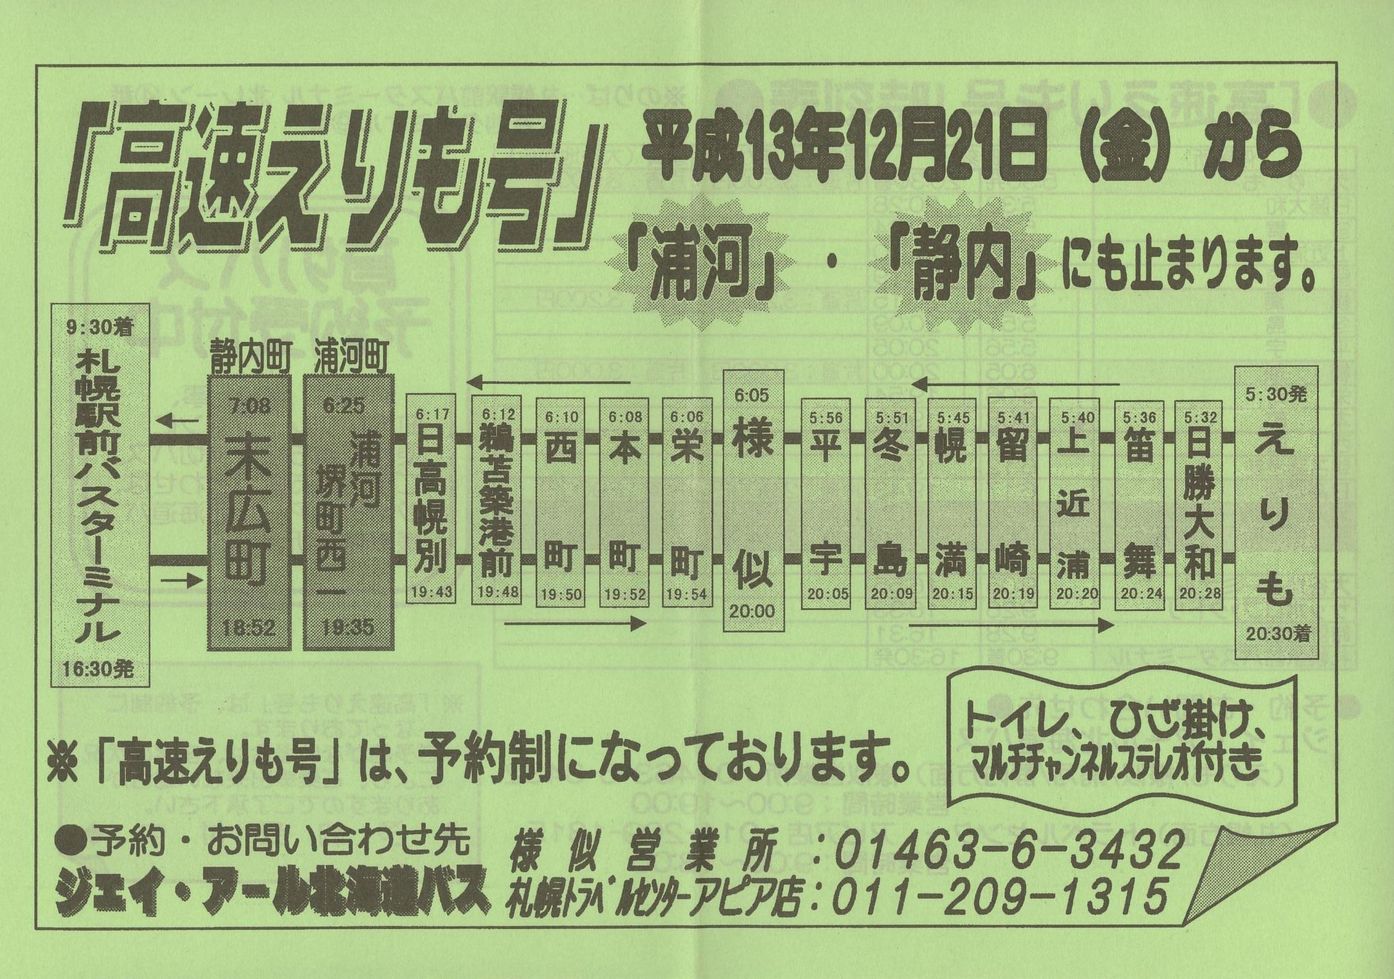 2001-12-21改正_ジェイ・アール北海道バス_高速えりも号チラシ表面